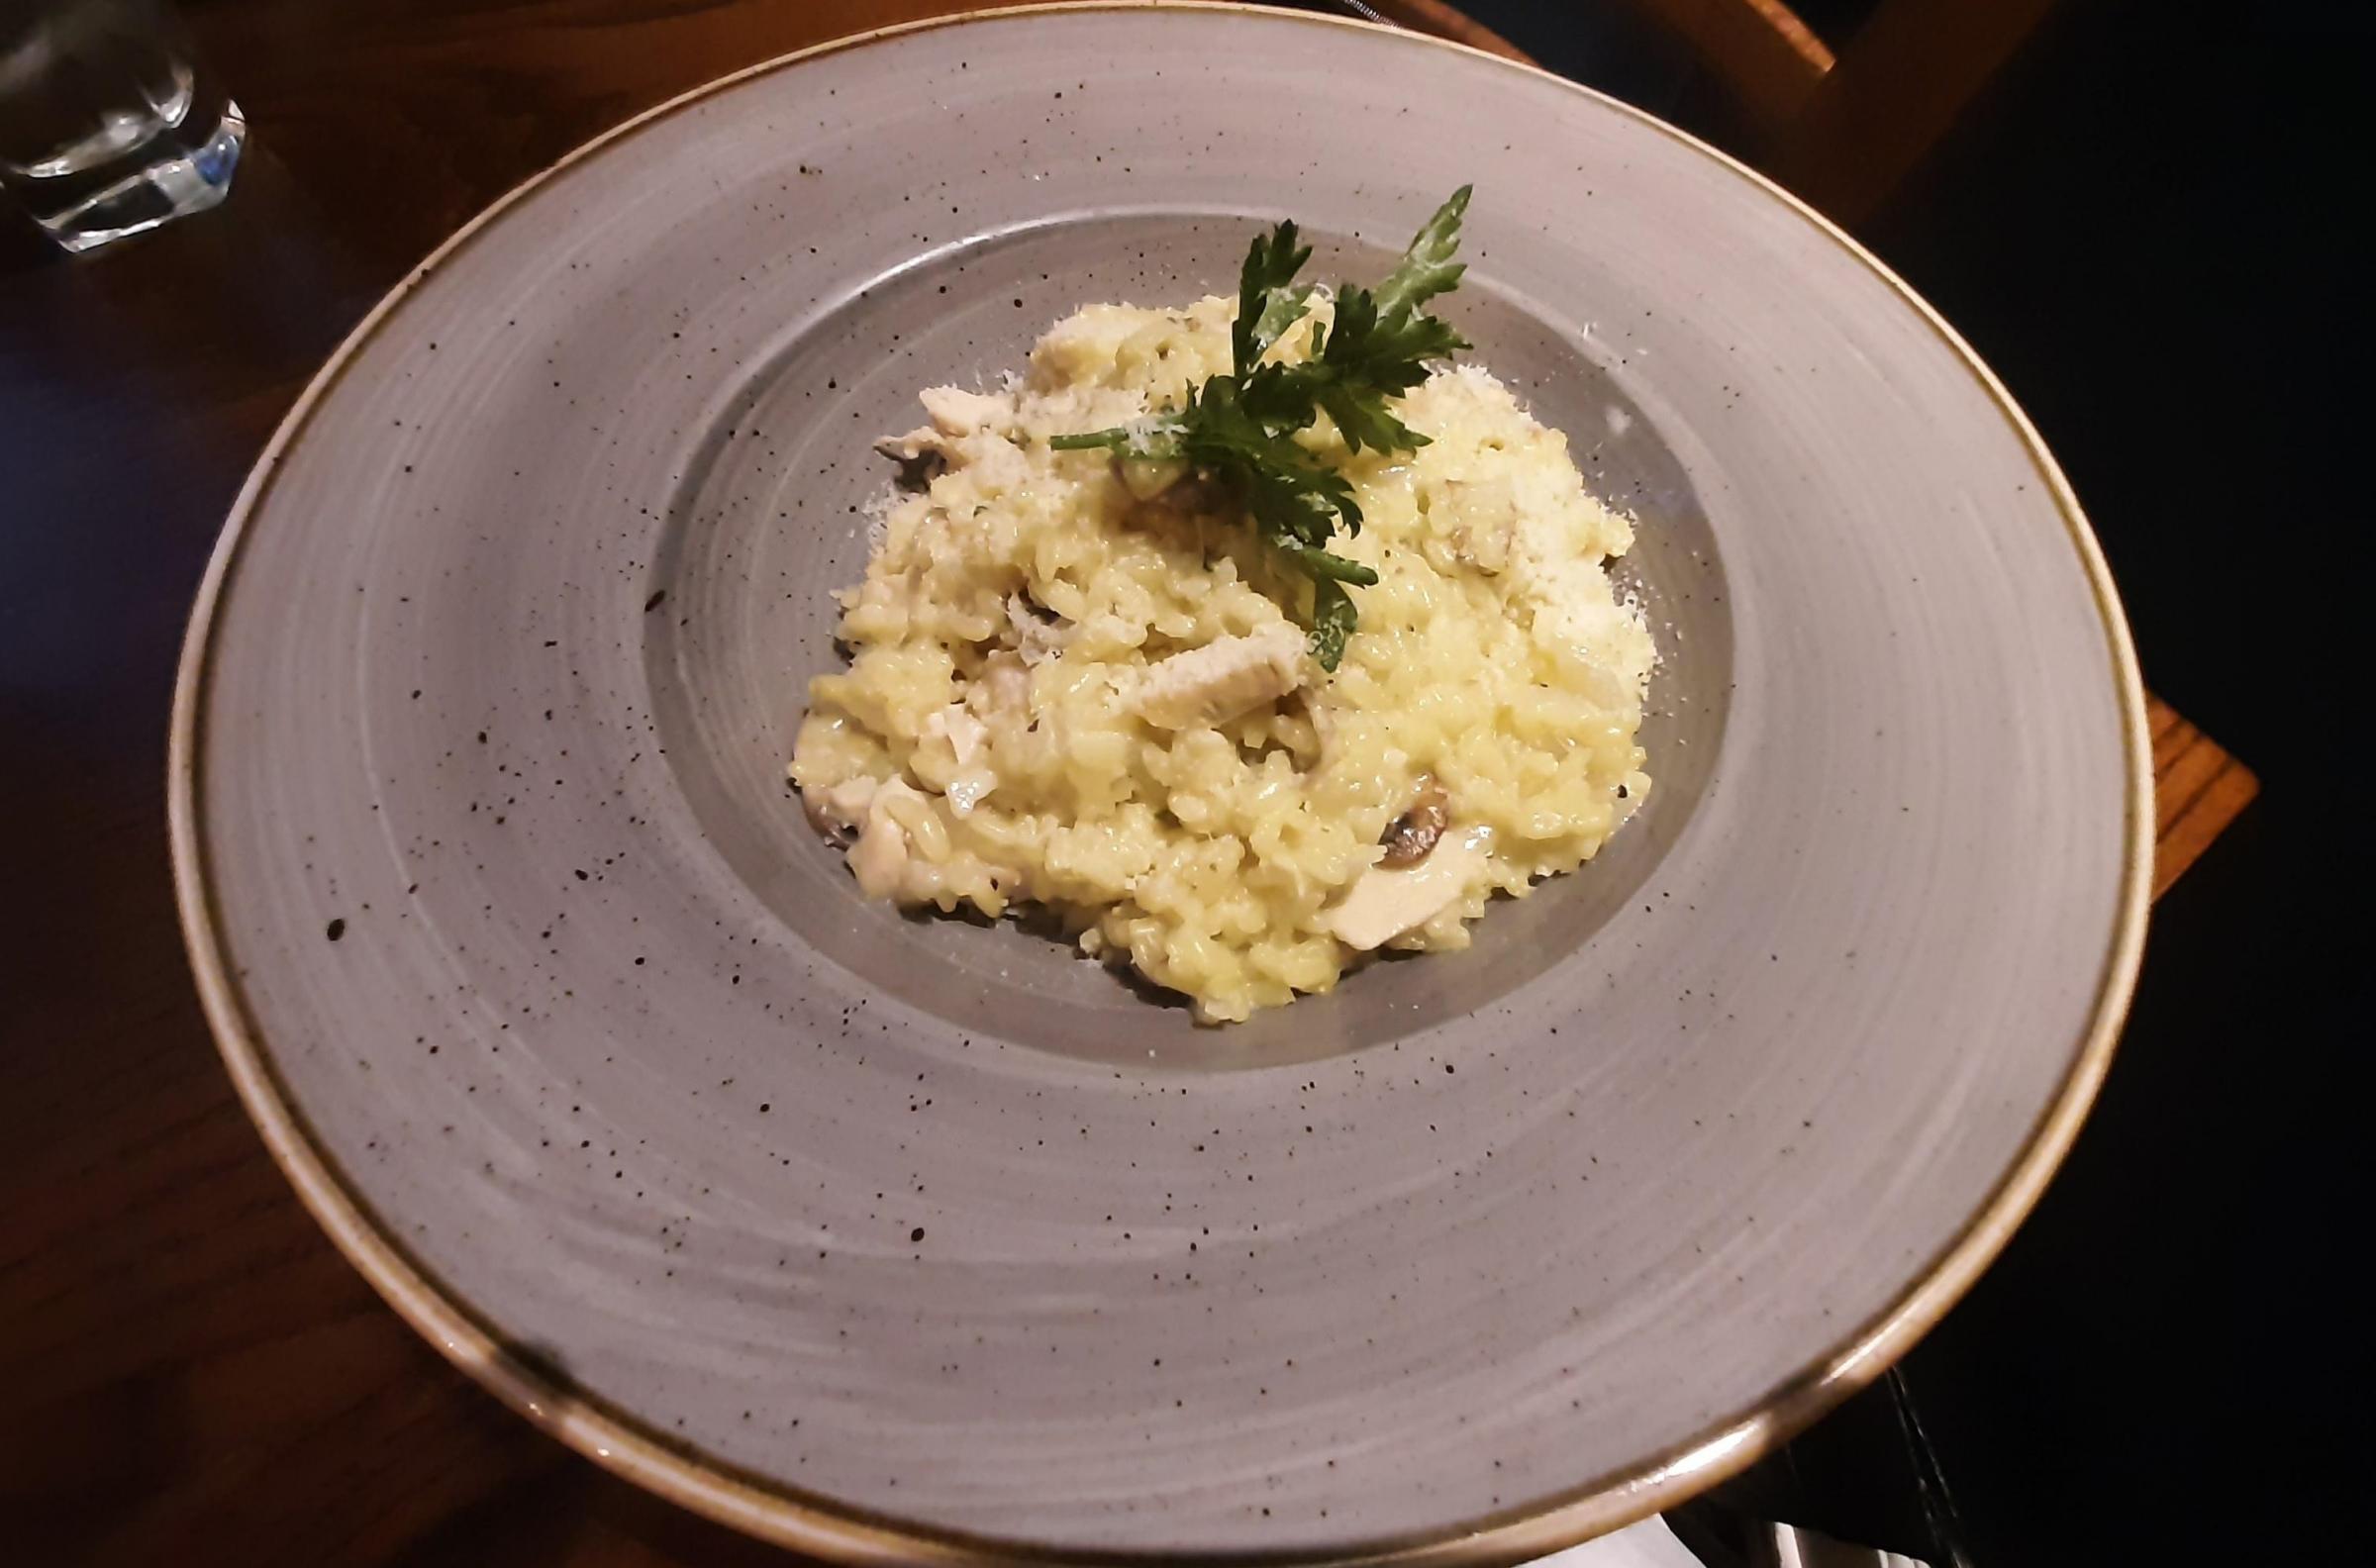 The pollo (chicken and mushroom) risotto